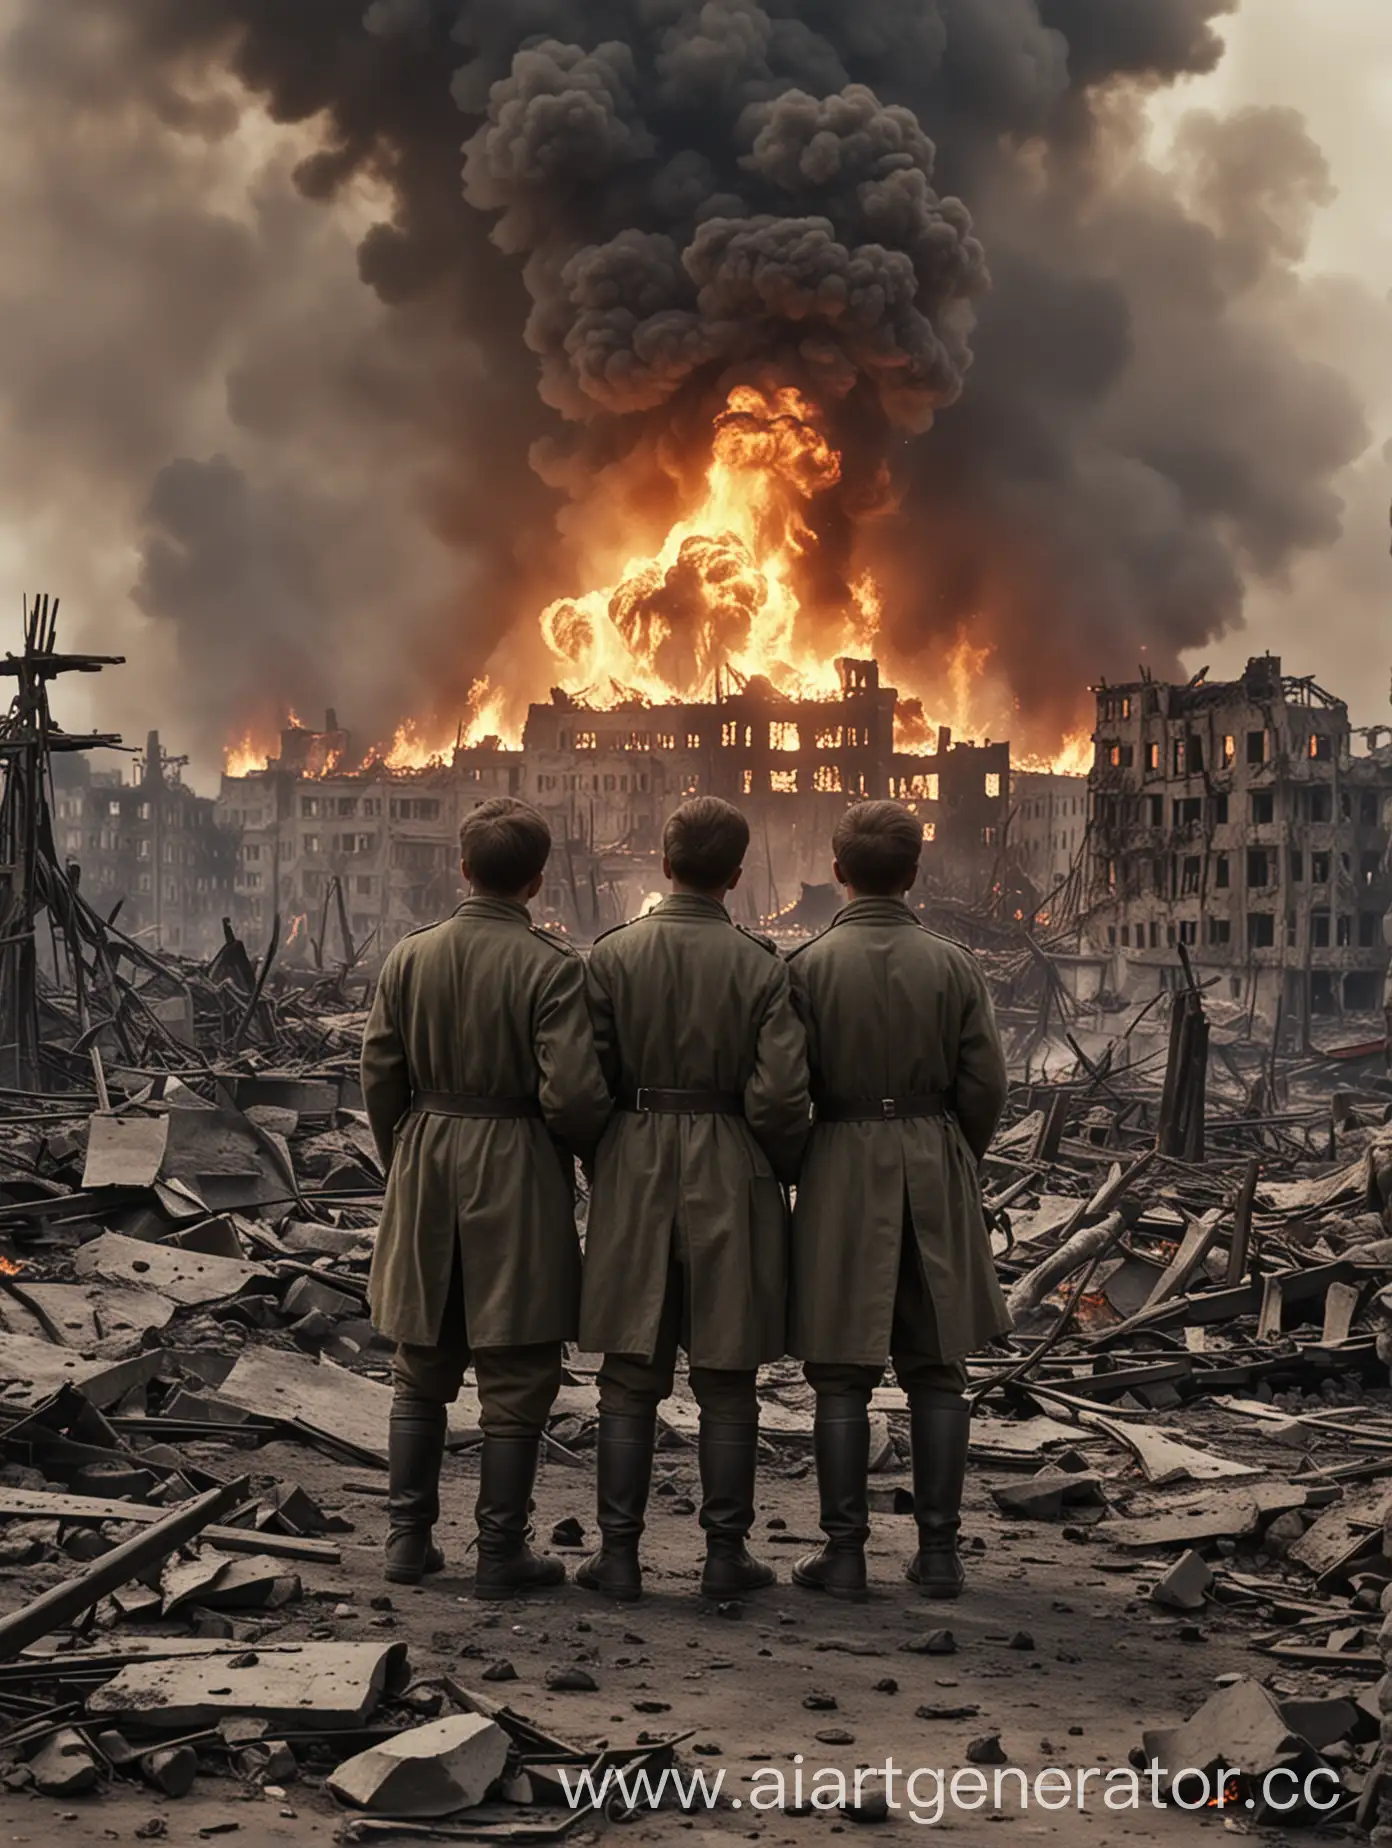 картинка о великой отечественной войне не представить этот бой где двое гражданских стоят спиной и смотрят на страшные кадры разрушенного города в огне